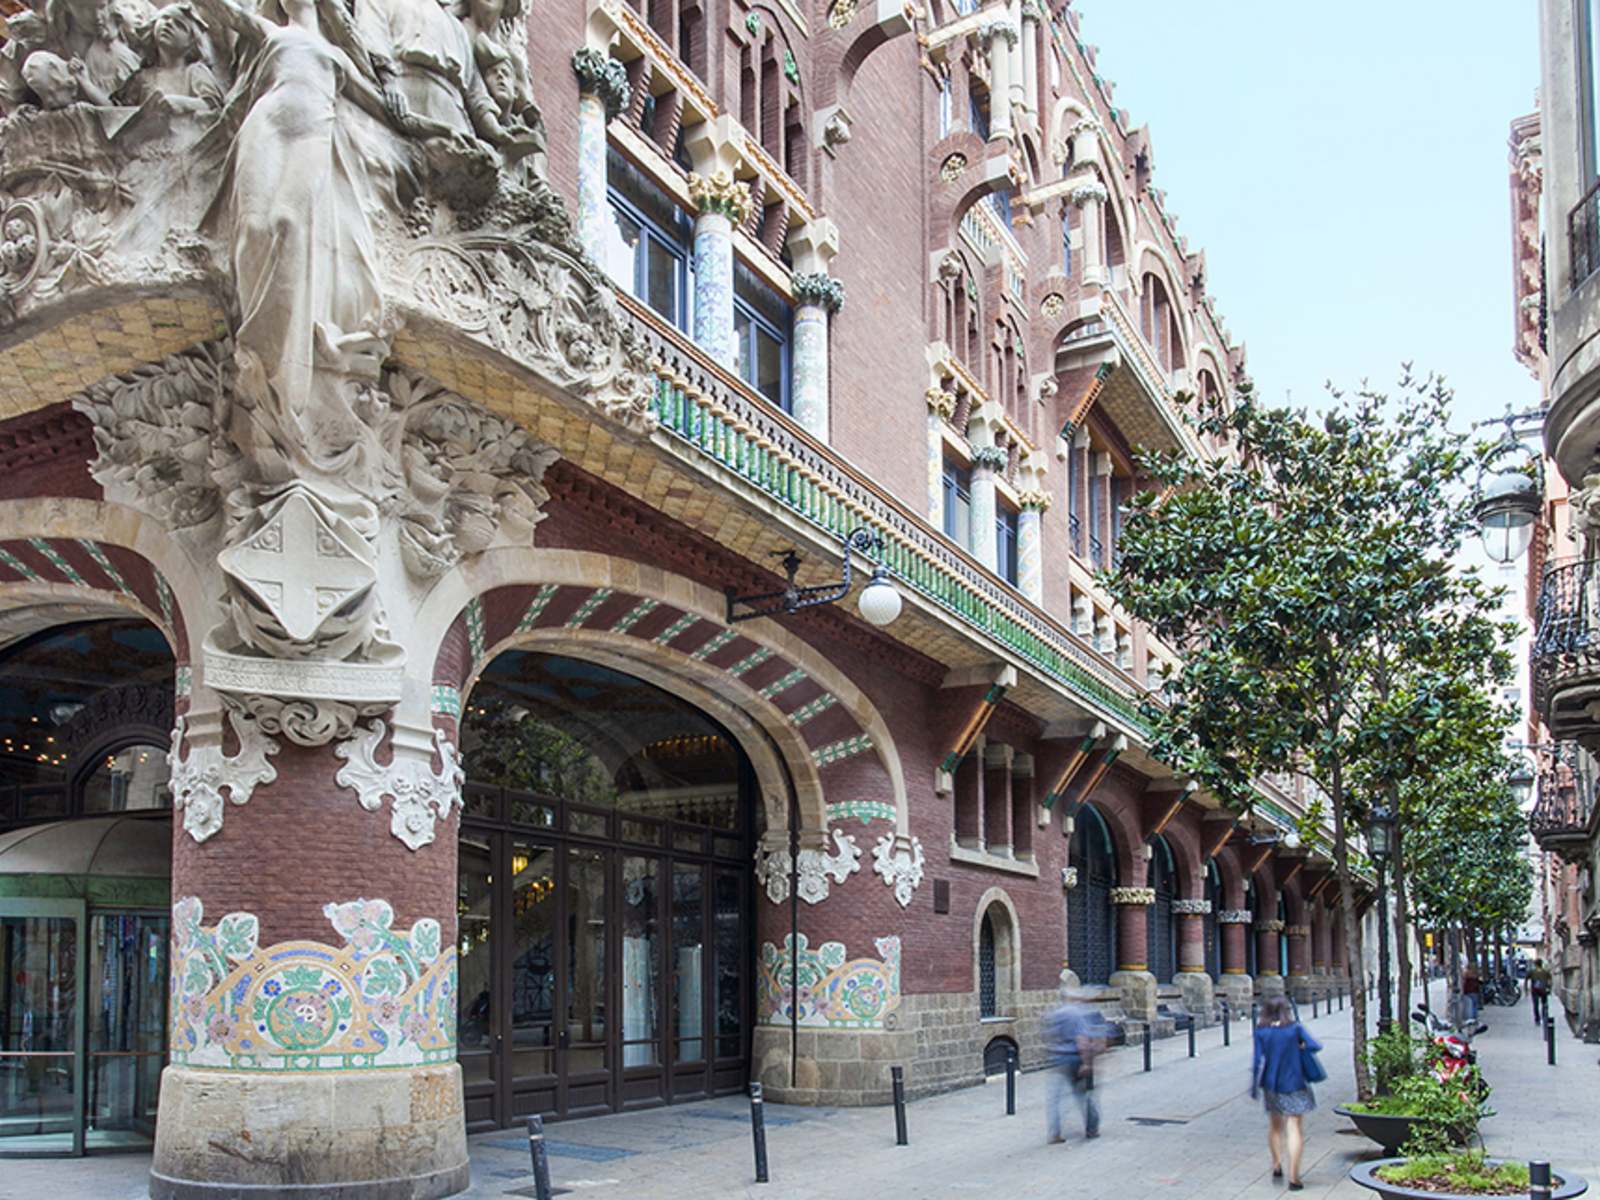 Alojarse en Barcelona también nos puede costar menos de 50 euros con estos alojamientos de Booking.